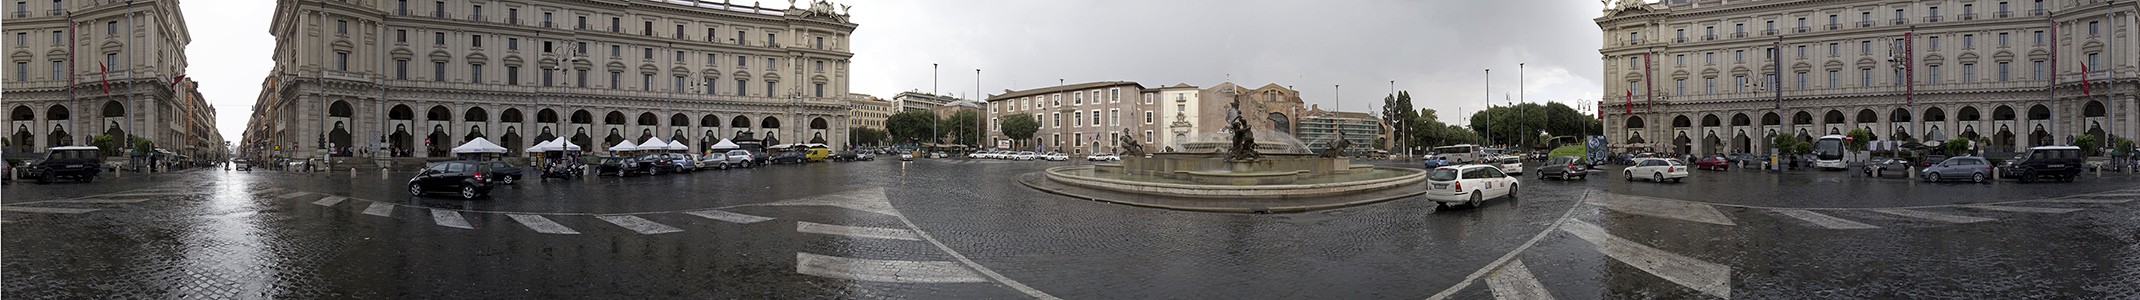 Rom Piazza della Repubblica mit dem Najaden-Brunnen (Fontana delle Naiadi)